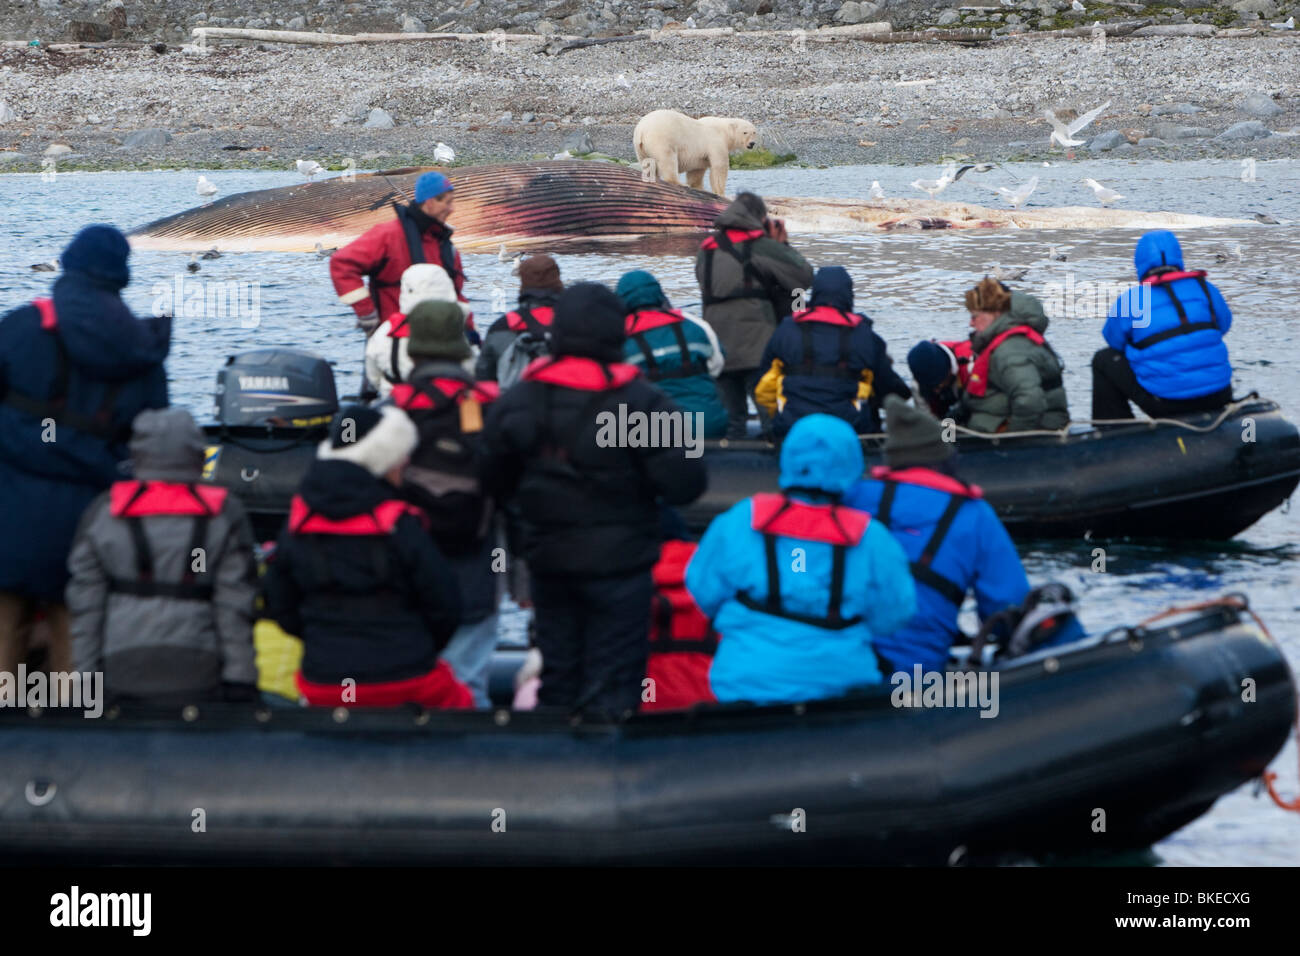 La Norvège, l'île de Spitsbergen, Svalbard, les touristes en bateaux gonflables Zodiac watch l'alimentation de l'ours polaire sur la carcasse des morts Rorqual commun Banque D'Images